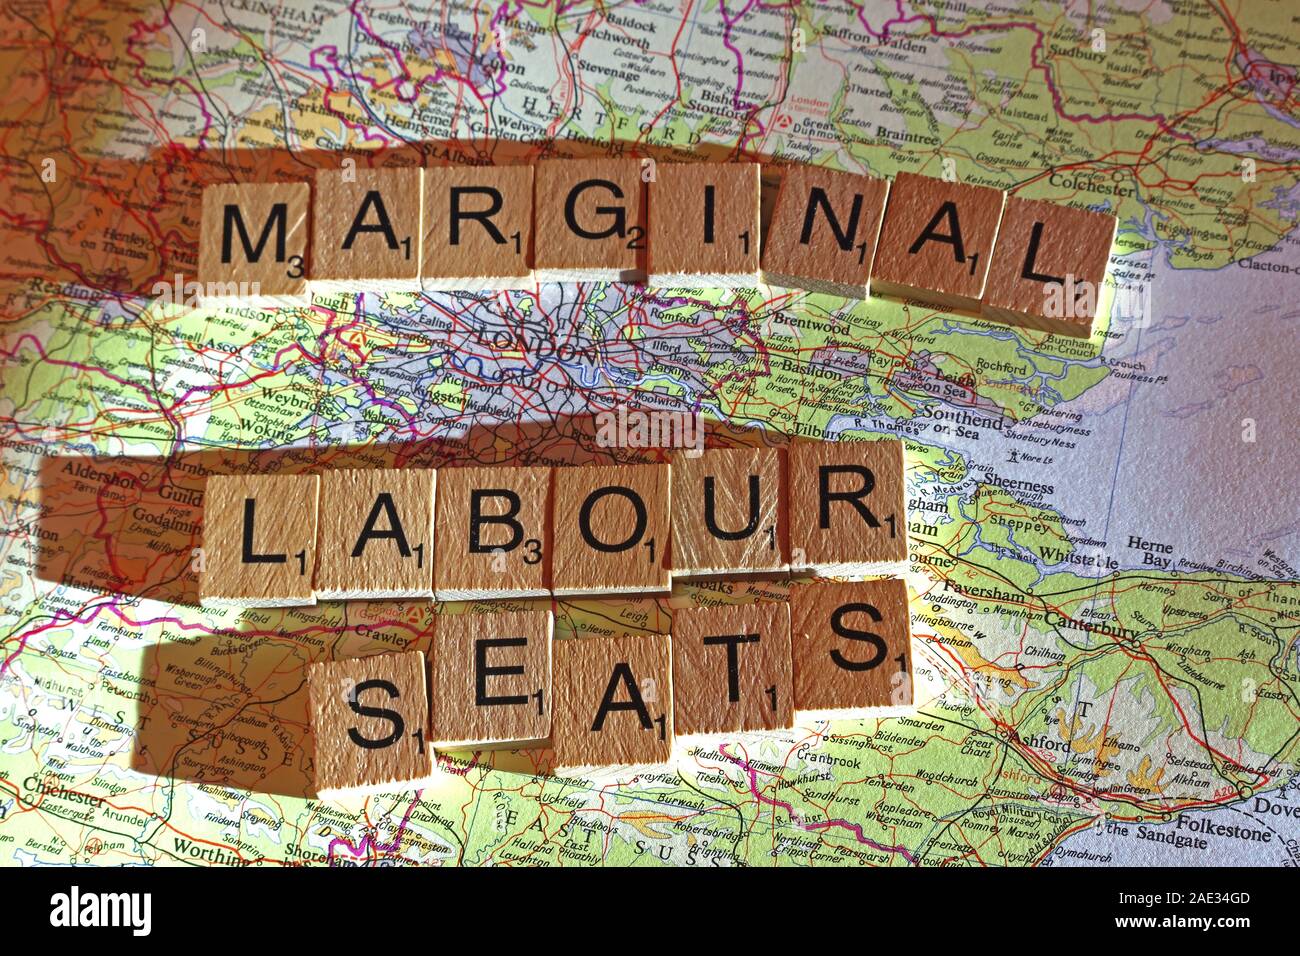 Geringfügiger Beschäftigung Sitze Dinkel in Scrabble Buchstaben auf einem UK Karte - allgemeine Wahlen, Wahlen, Parteien, Politiker, Parteien, Ansprüche, Zweifel Stockfoto